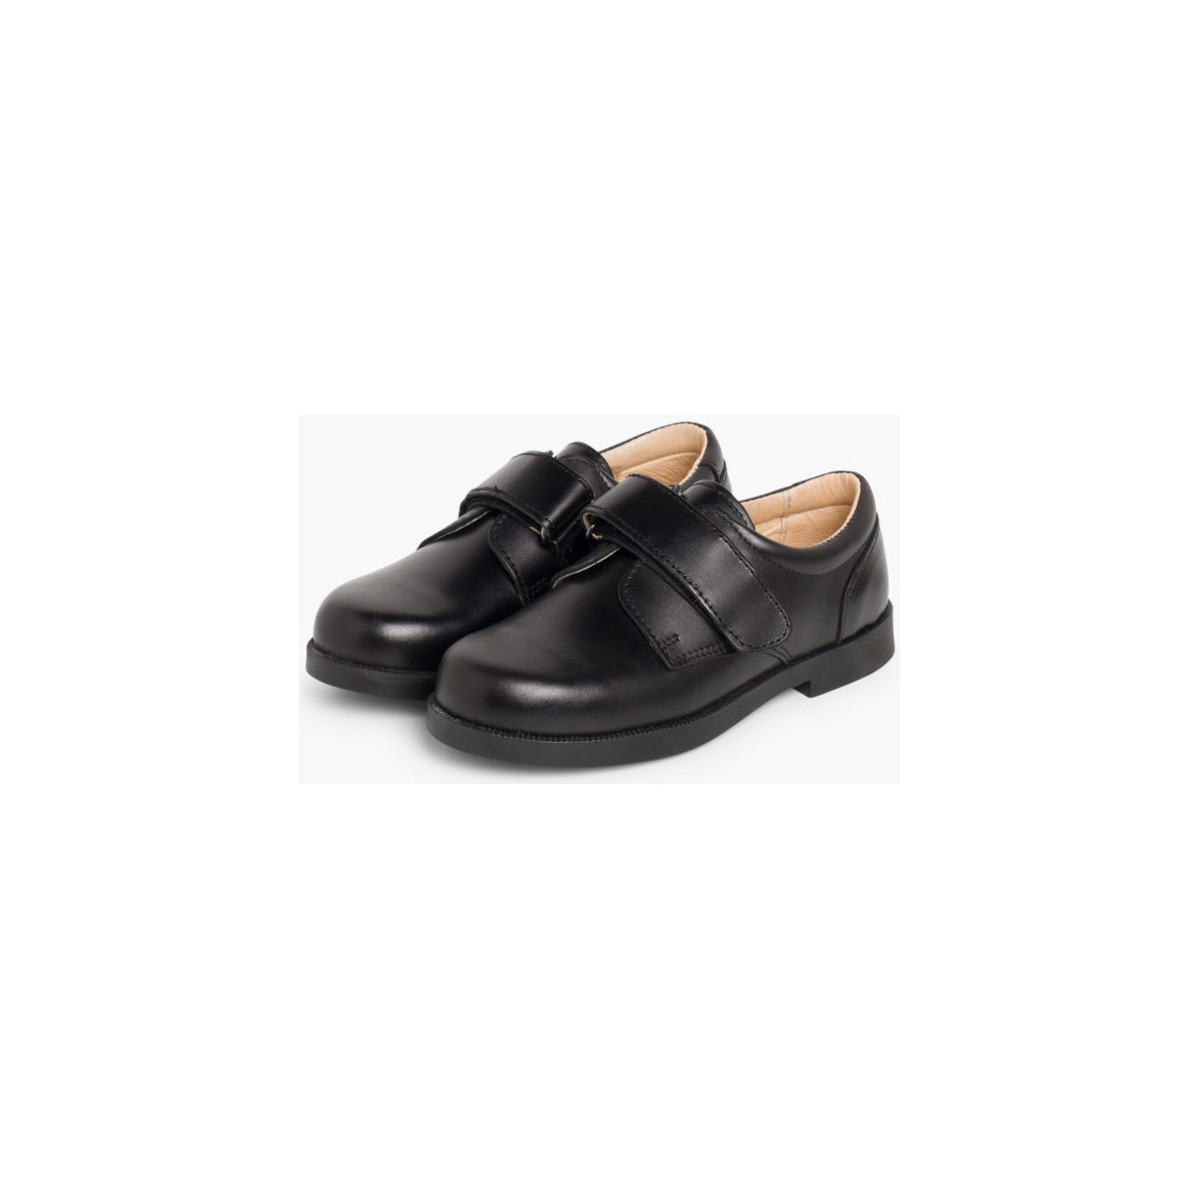 Pisamonas Noir Chaussures d´école avec à scratch pour Garçon 8H4km0jD